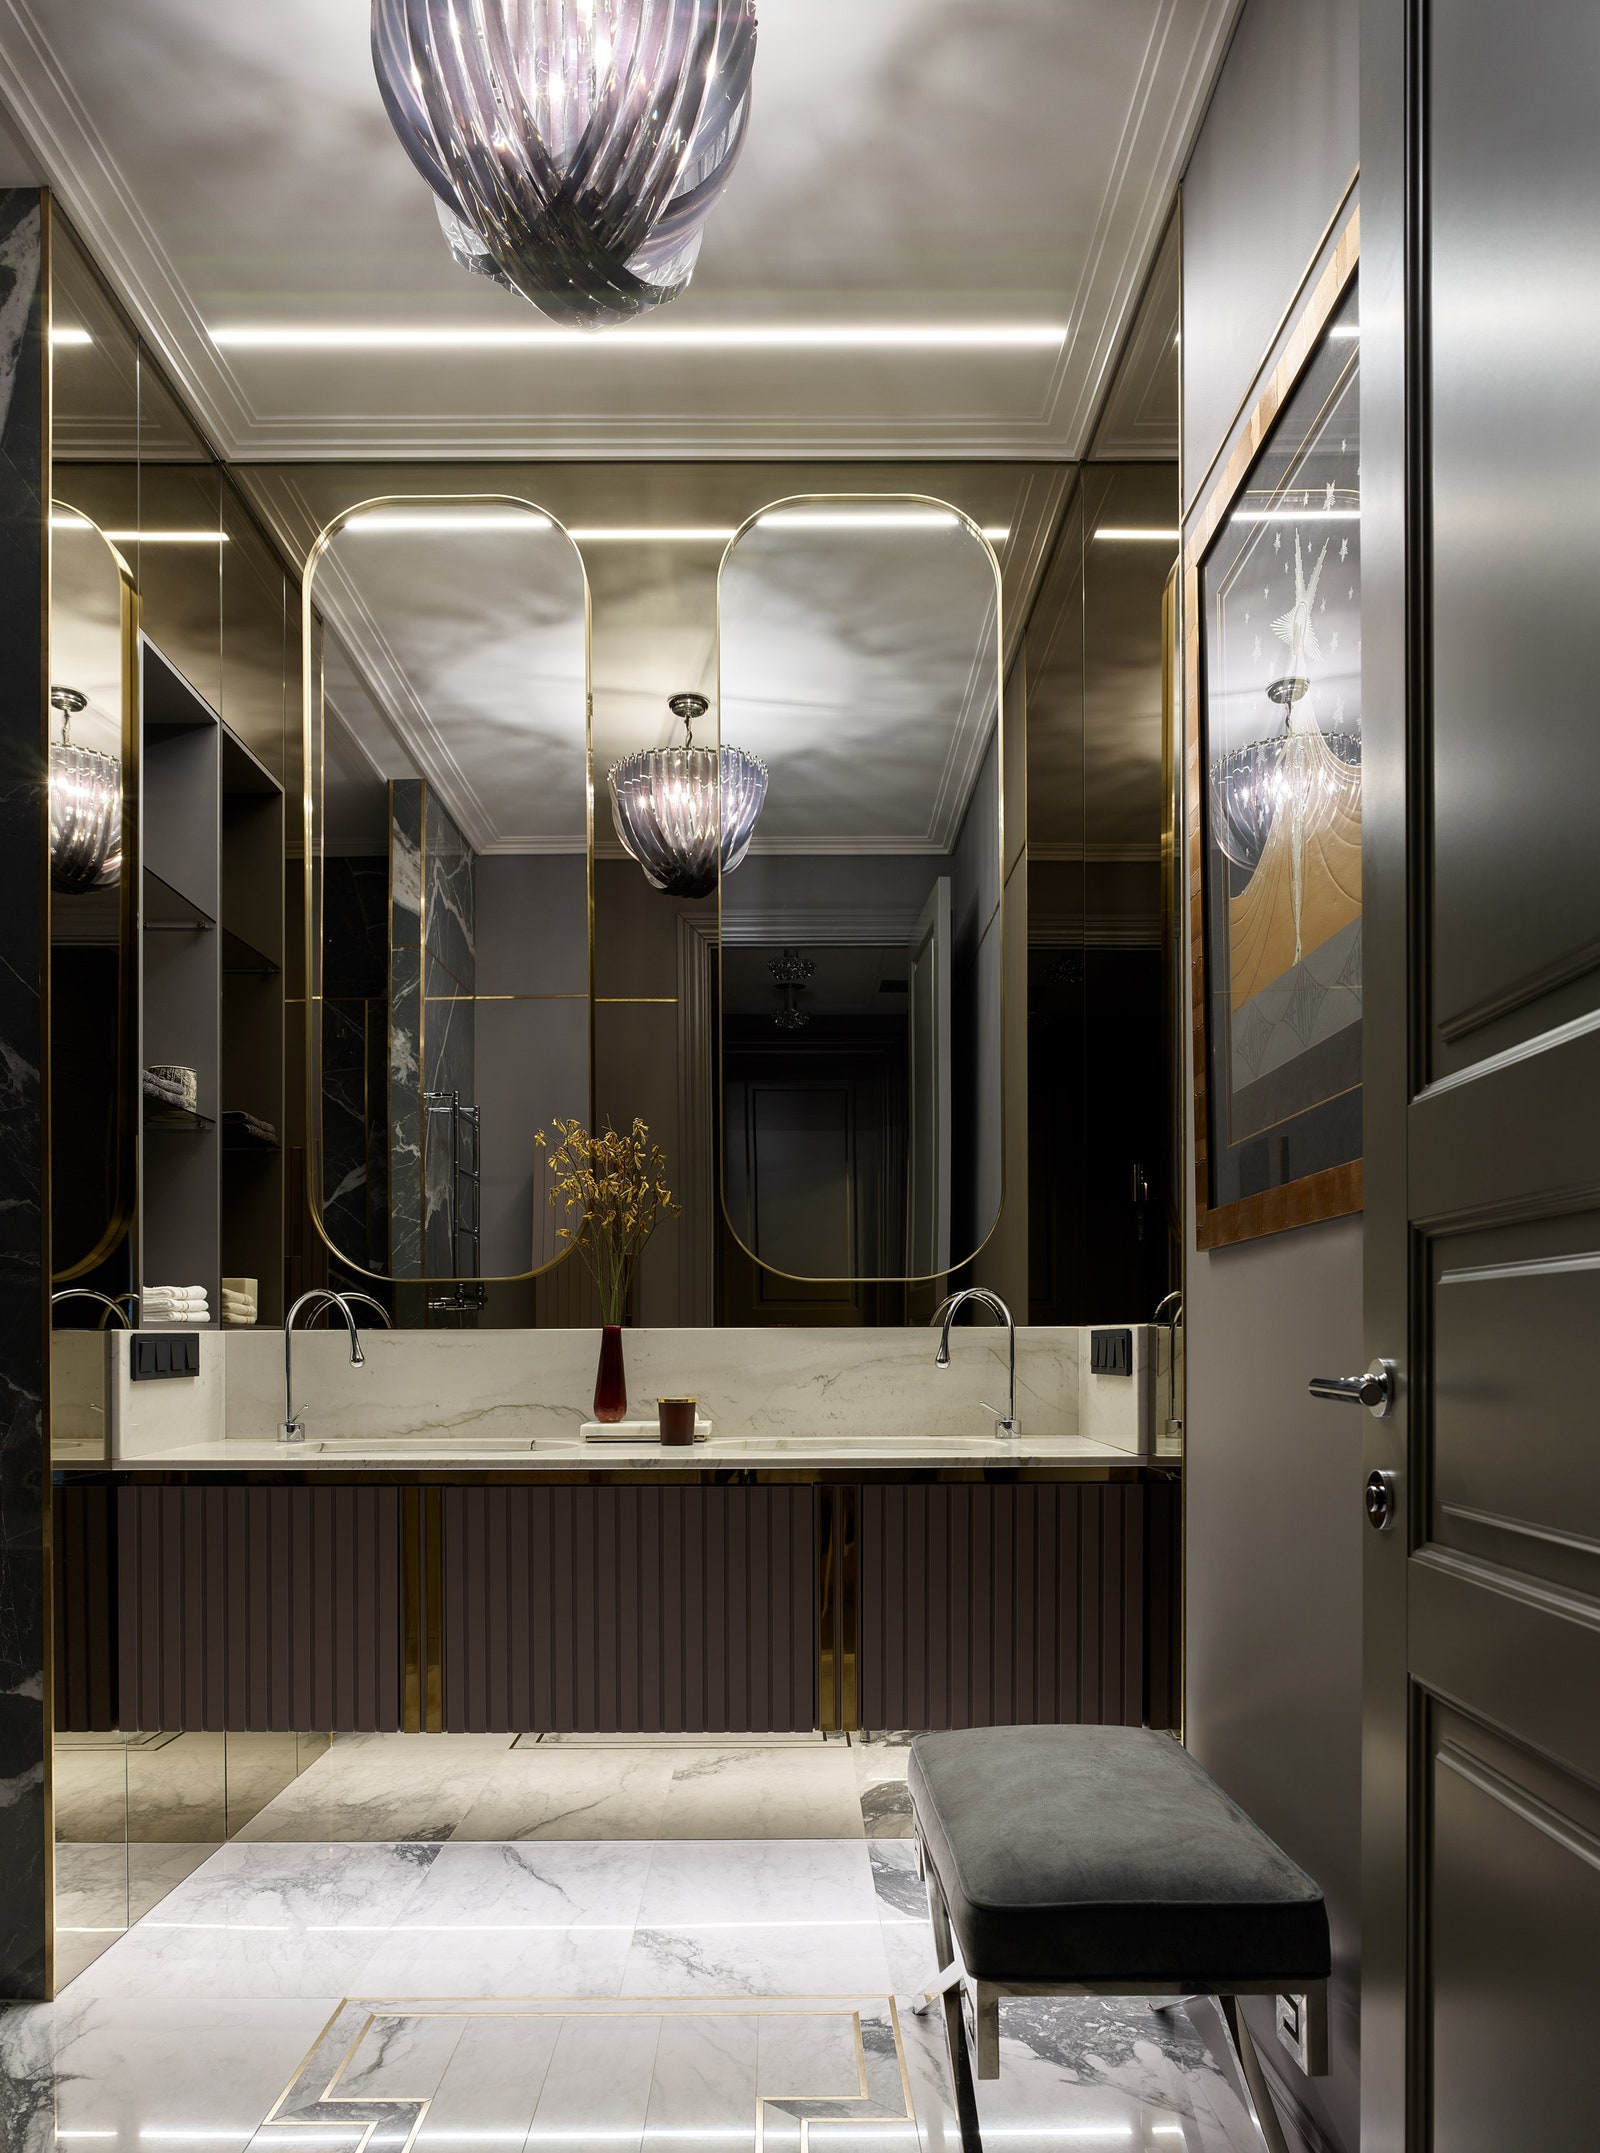 Ванная комната. Мебель Bionica Wood и зеркала изготовлены по эскизам дизайнера банкетка Eichholtz.